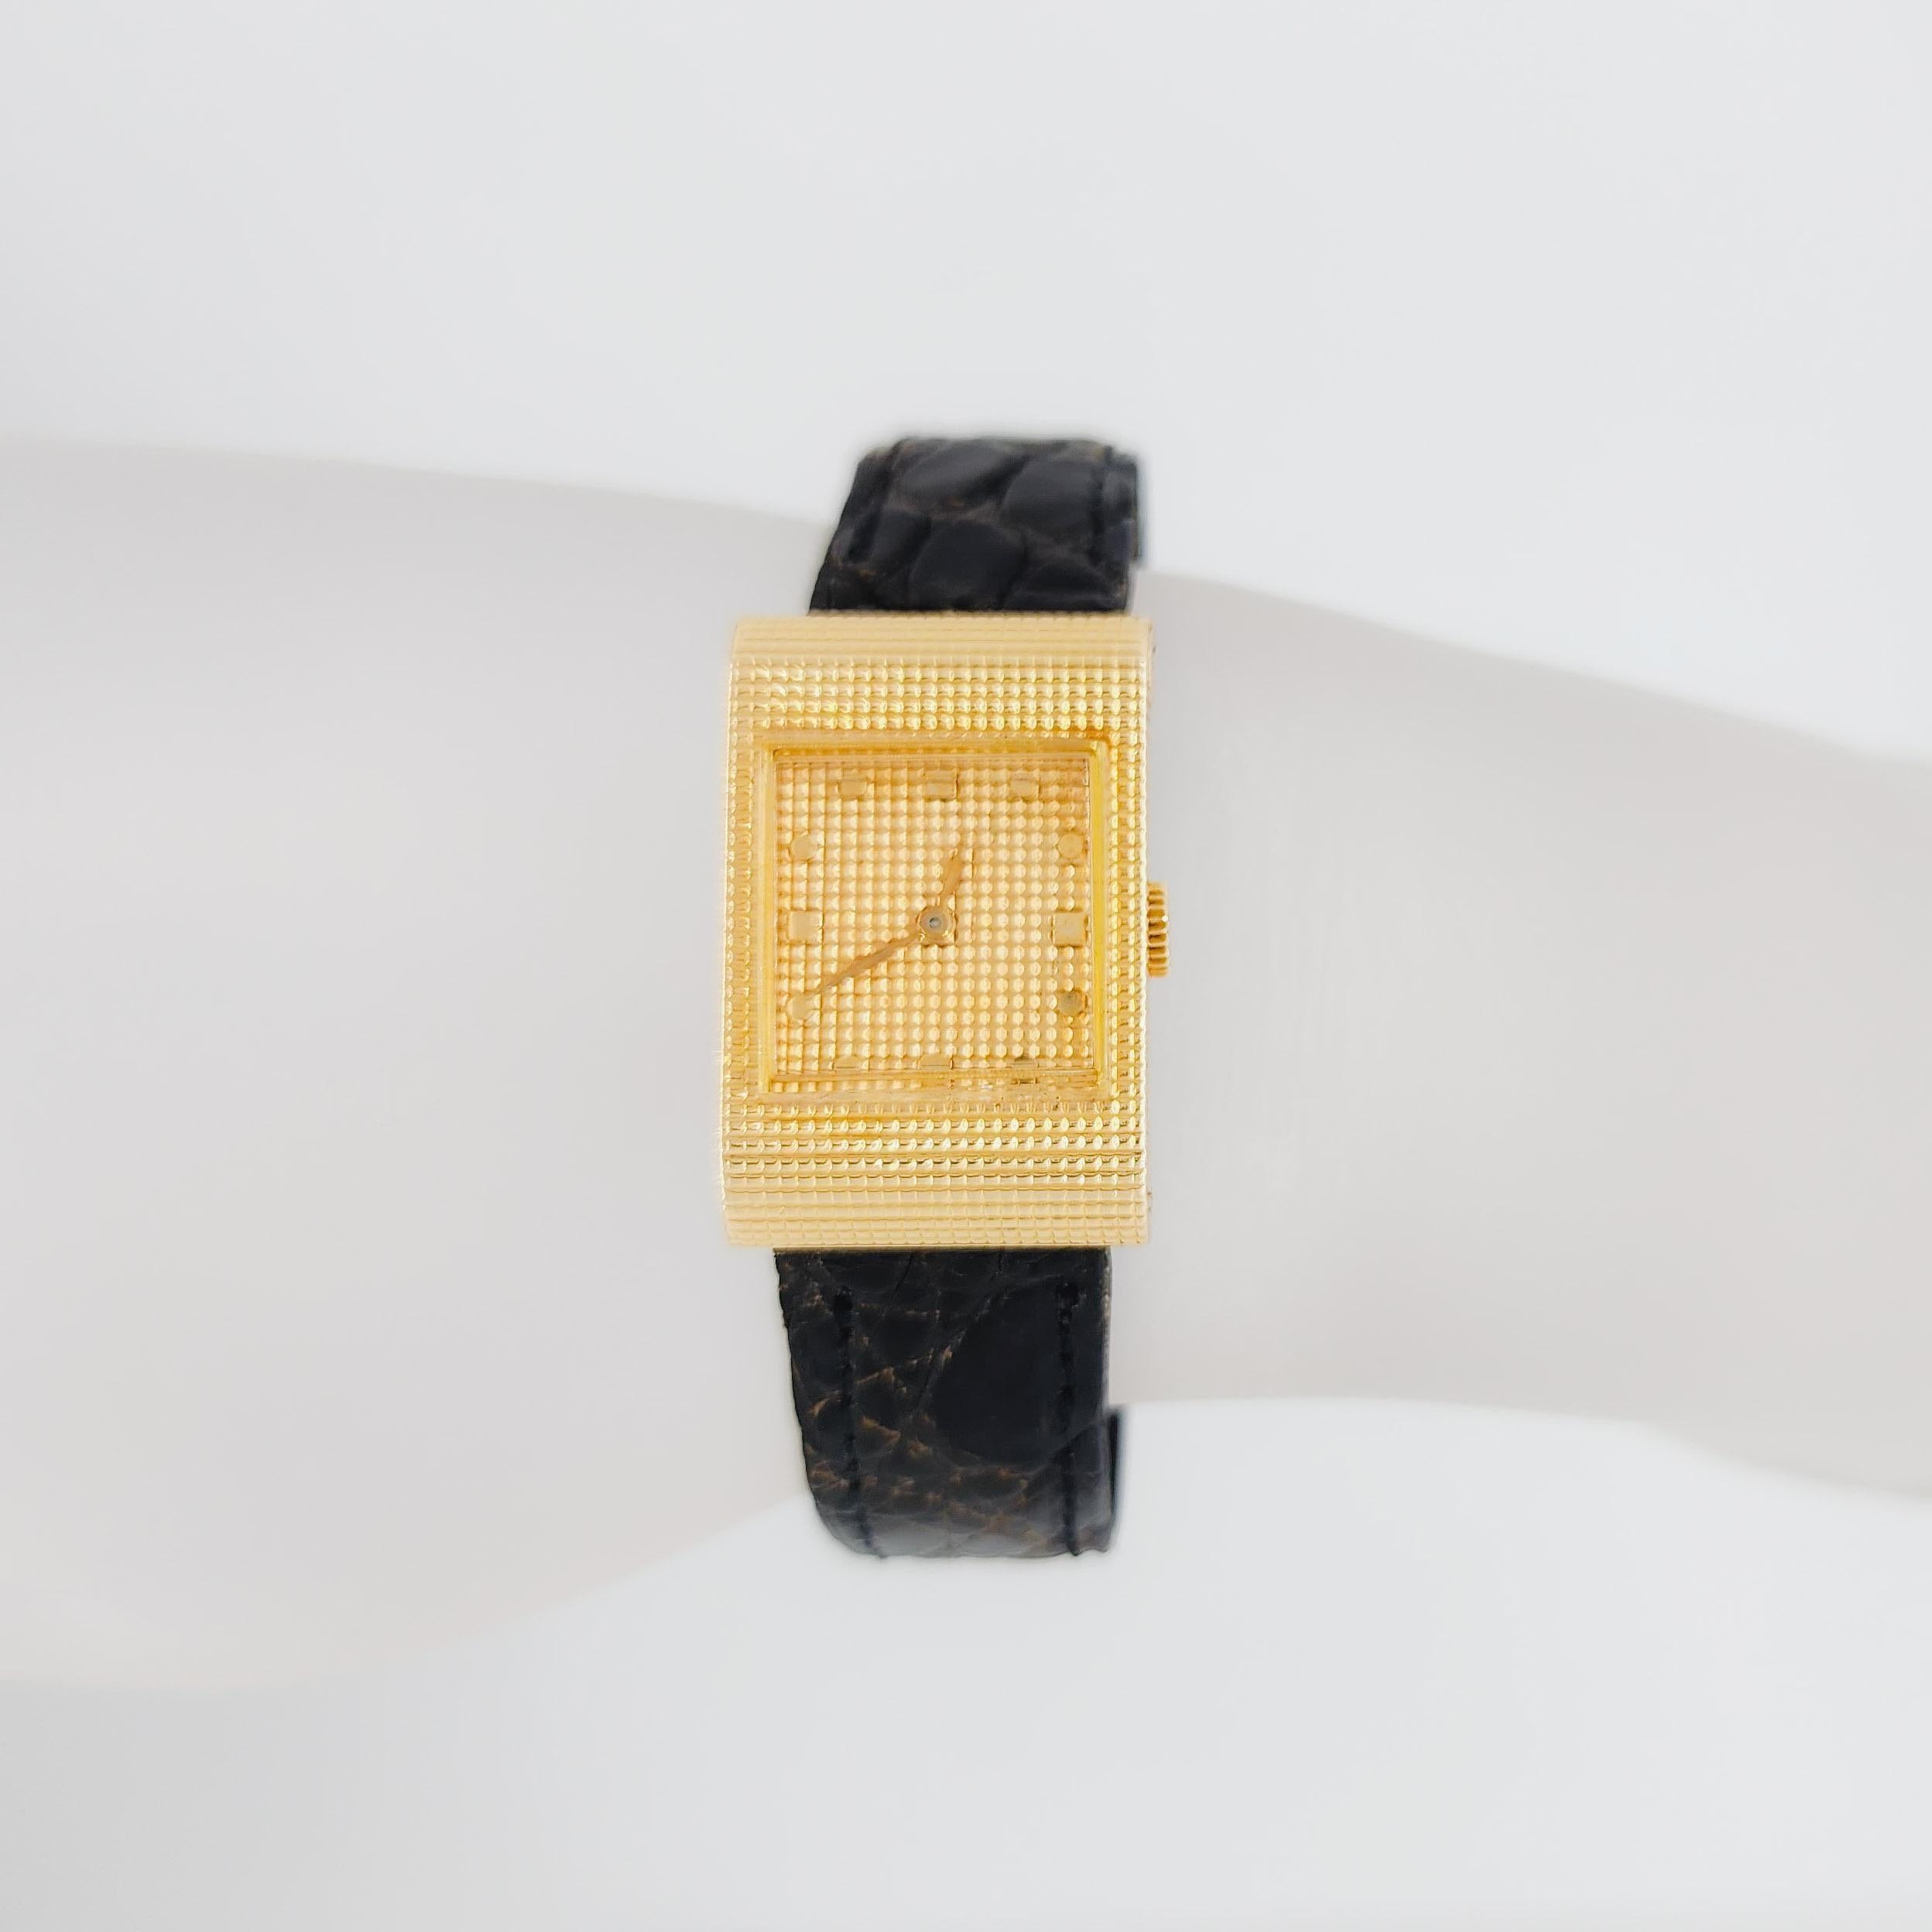 Beautiful Boucheron estate 18k yellow gold Reflet watch.